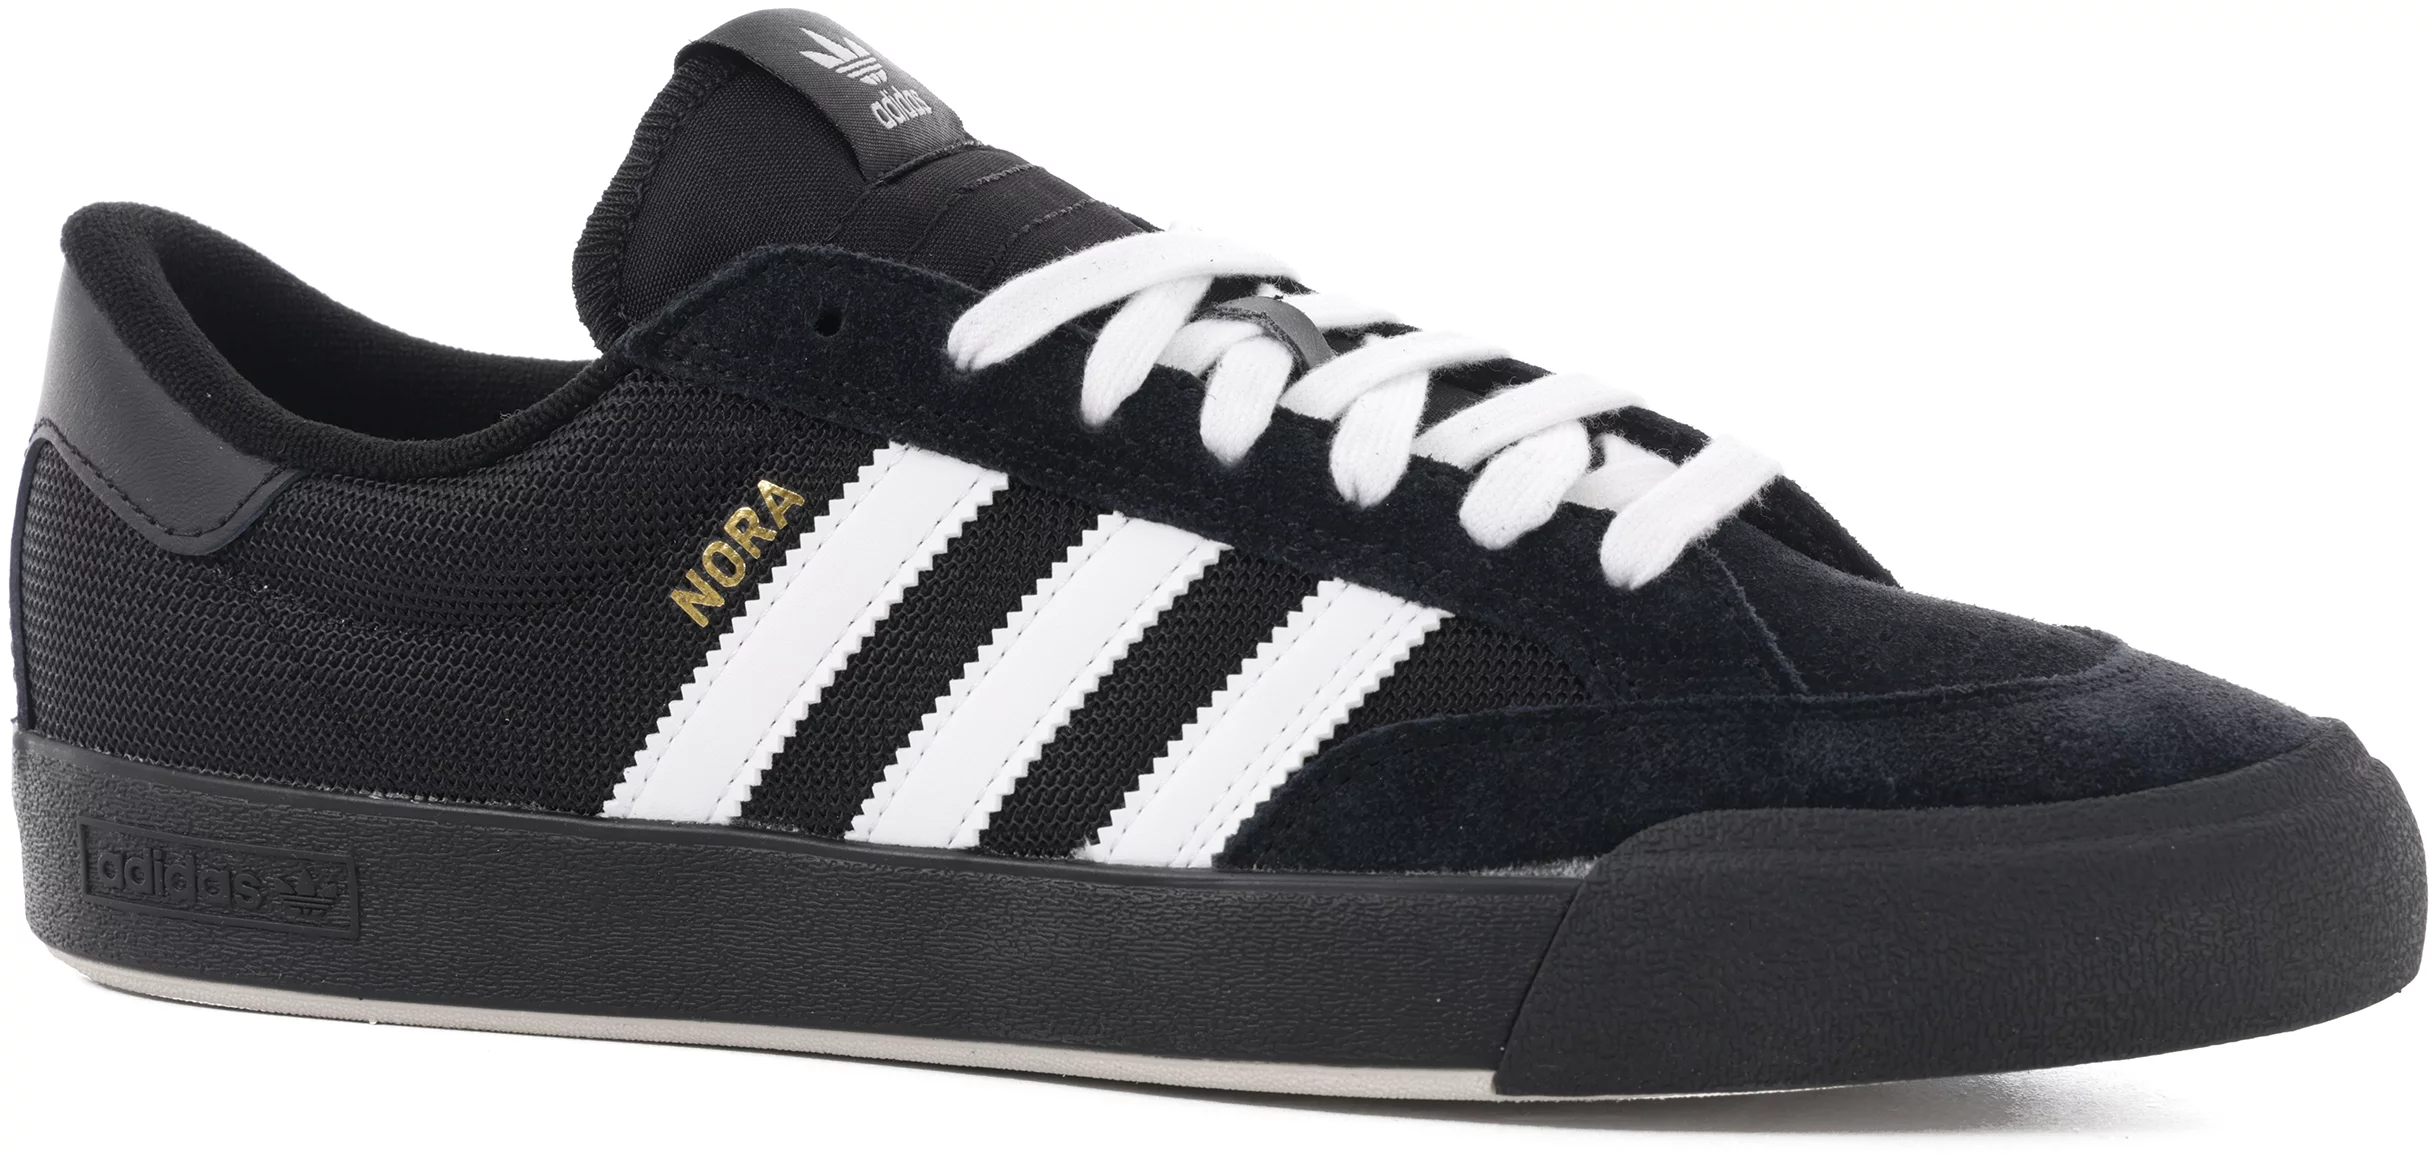 Adidas Nora Skate - core black/footwear white/gold - Free Shipping